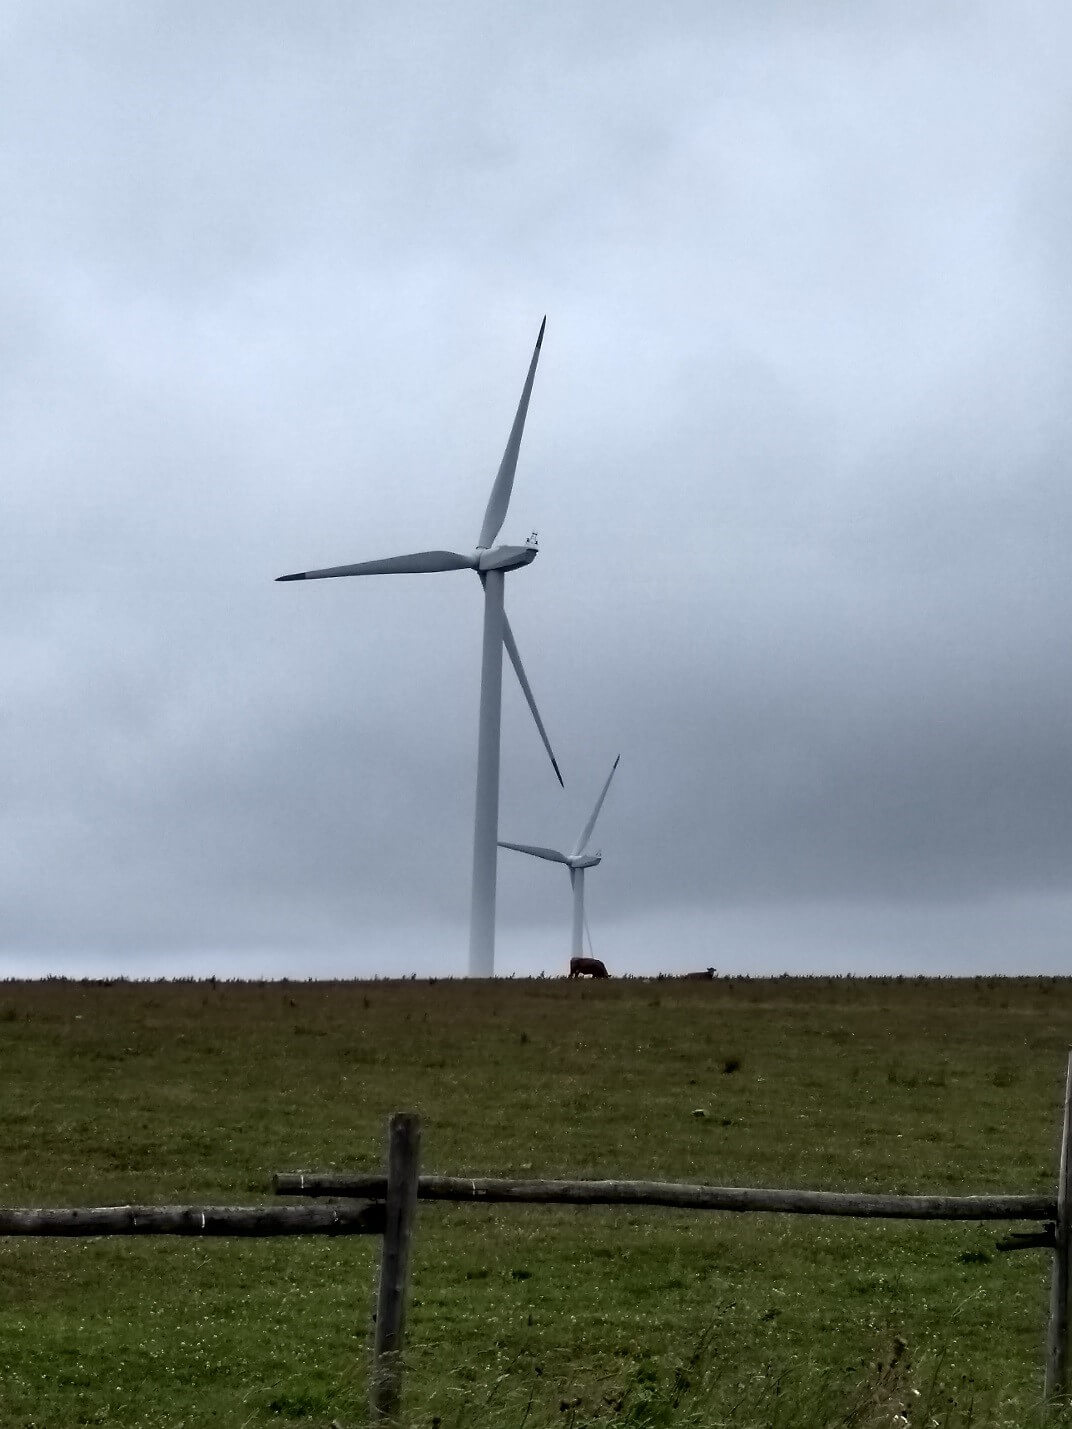 Větrné elektrárny v decentralizované podobě jsou i v současné energetické koncepci, ale jejich potenciál je omezený. Větrné turbínu v Krušných horách. (Zdroj Vladimír Wagner).